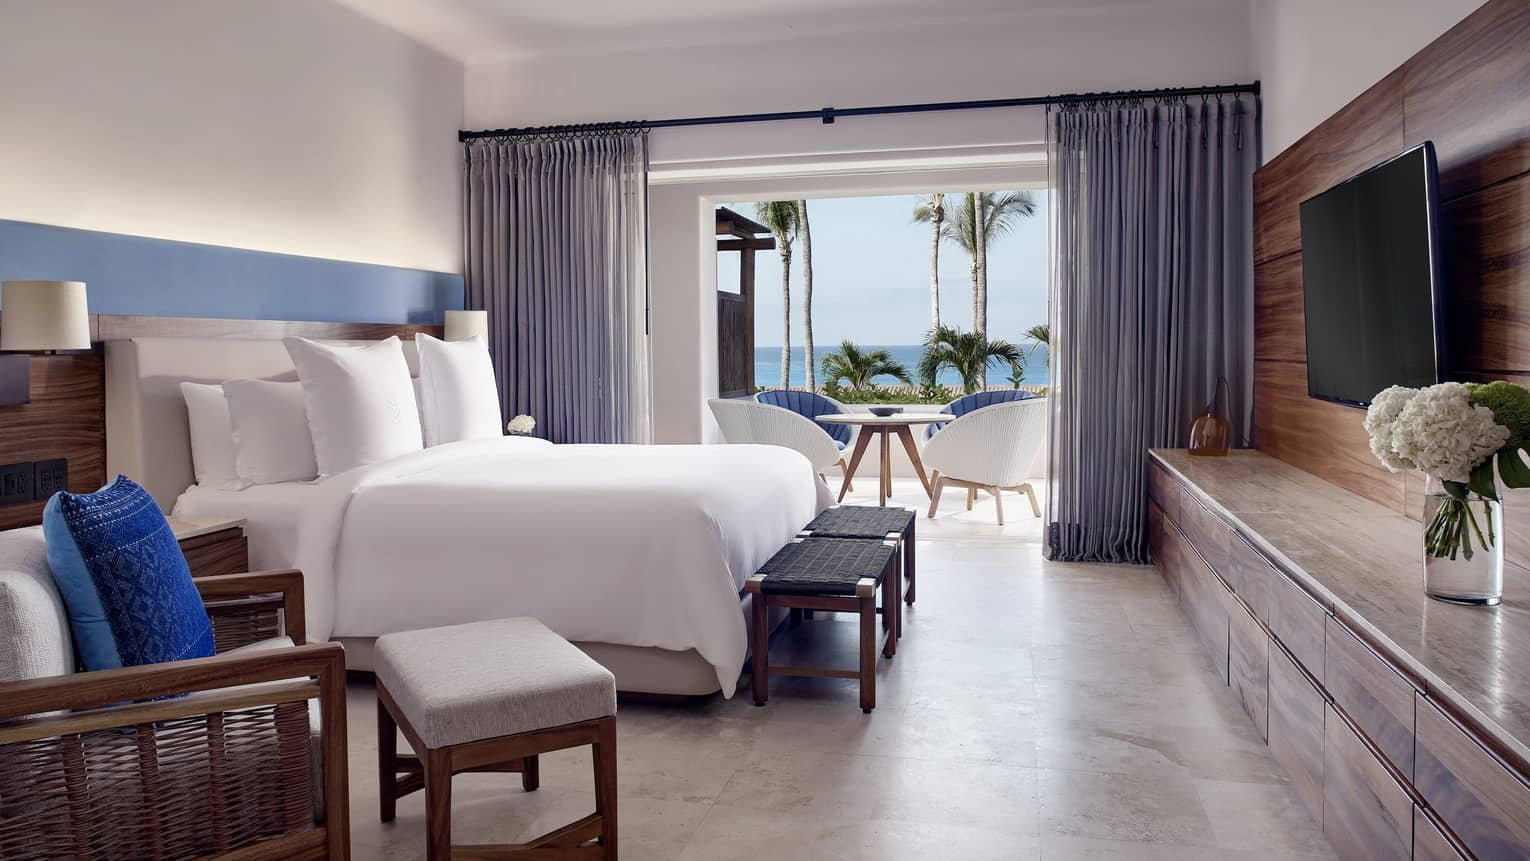 Four Seasons Resort Punta Mita – Nayarit, Mexico – Ocean Plunge Pool Suite Bedroom View